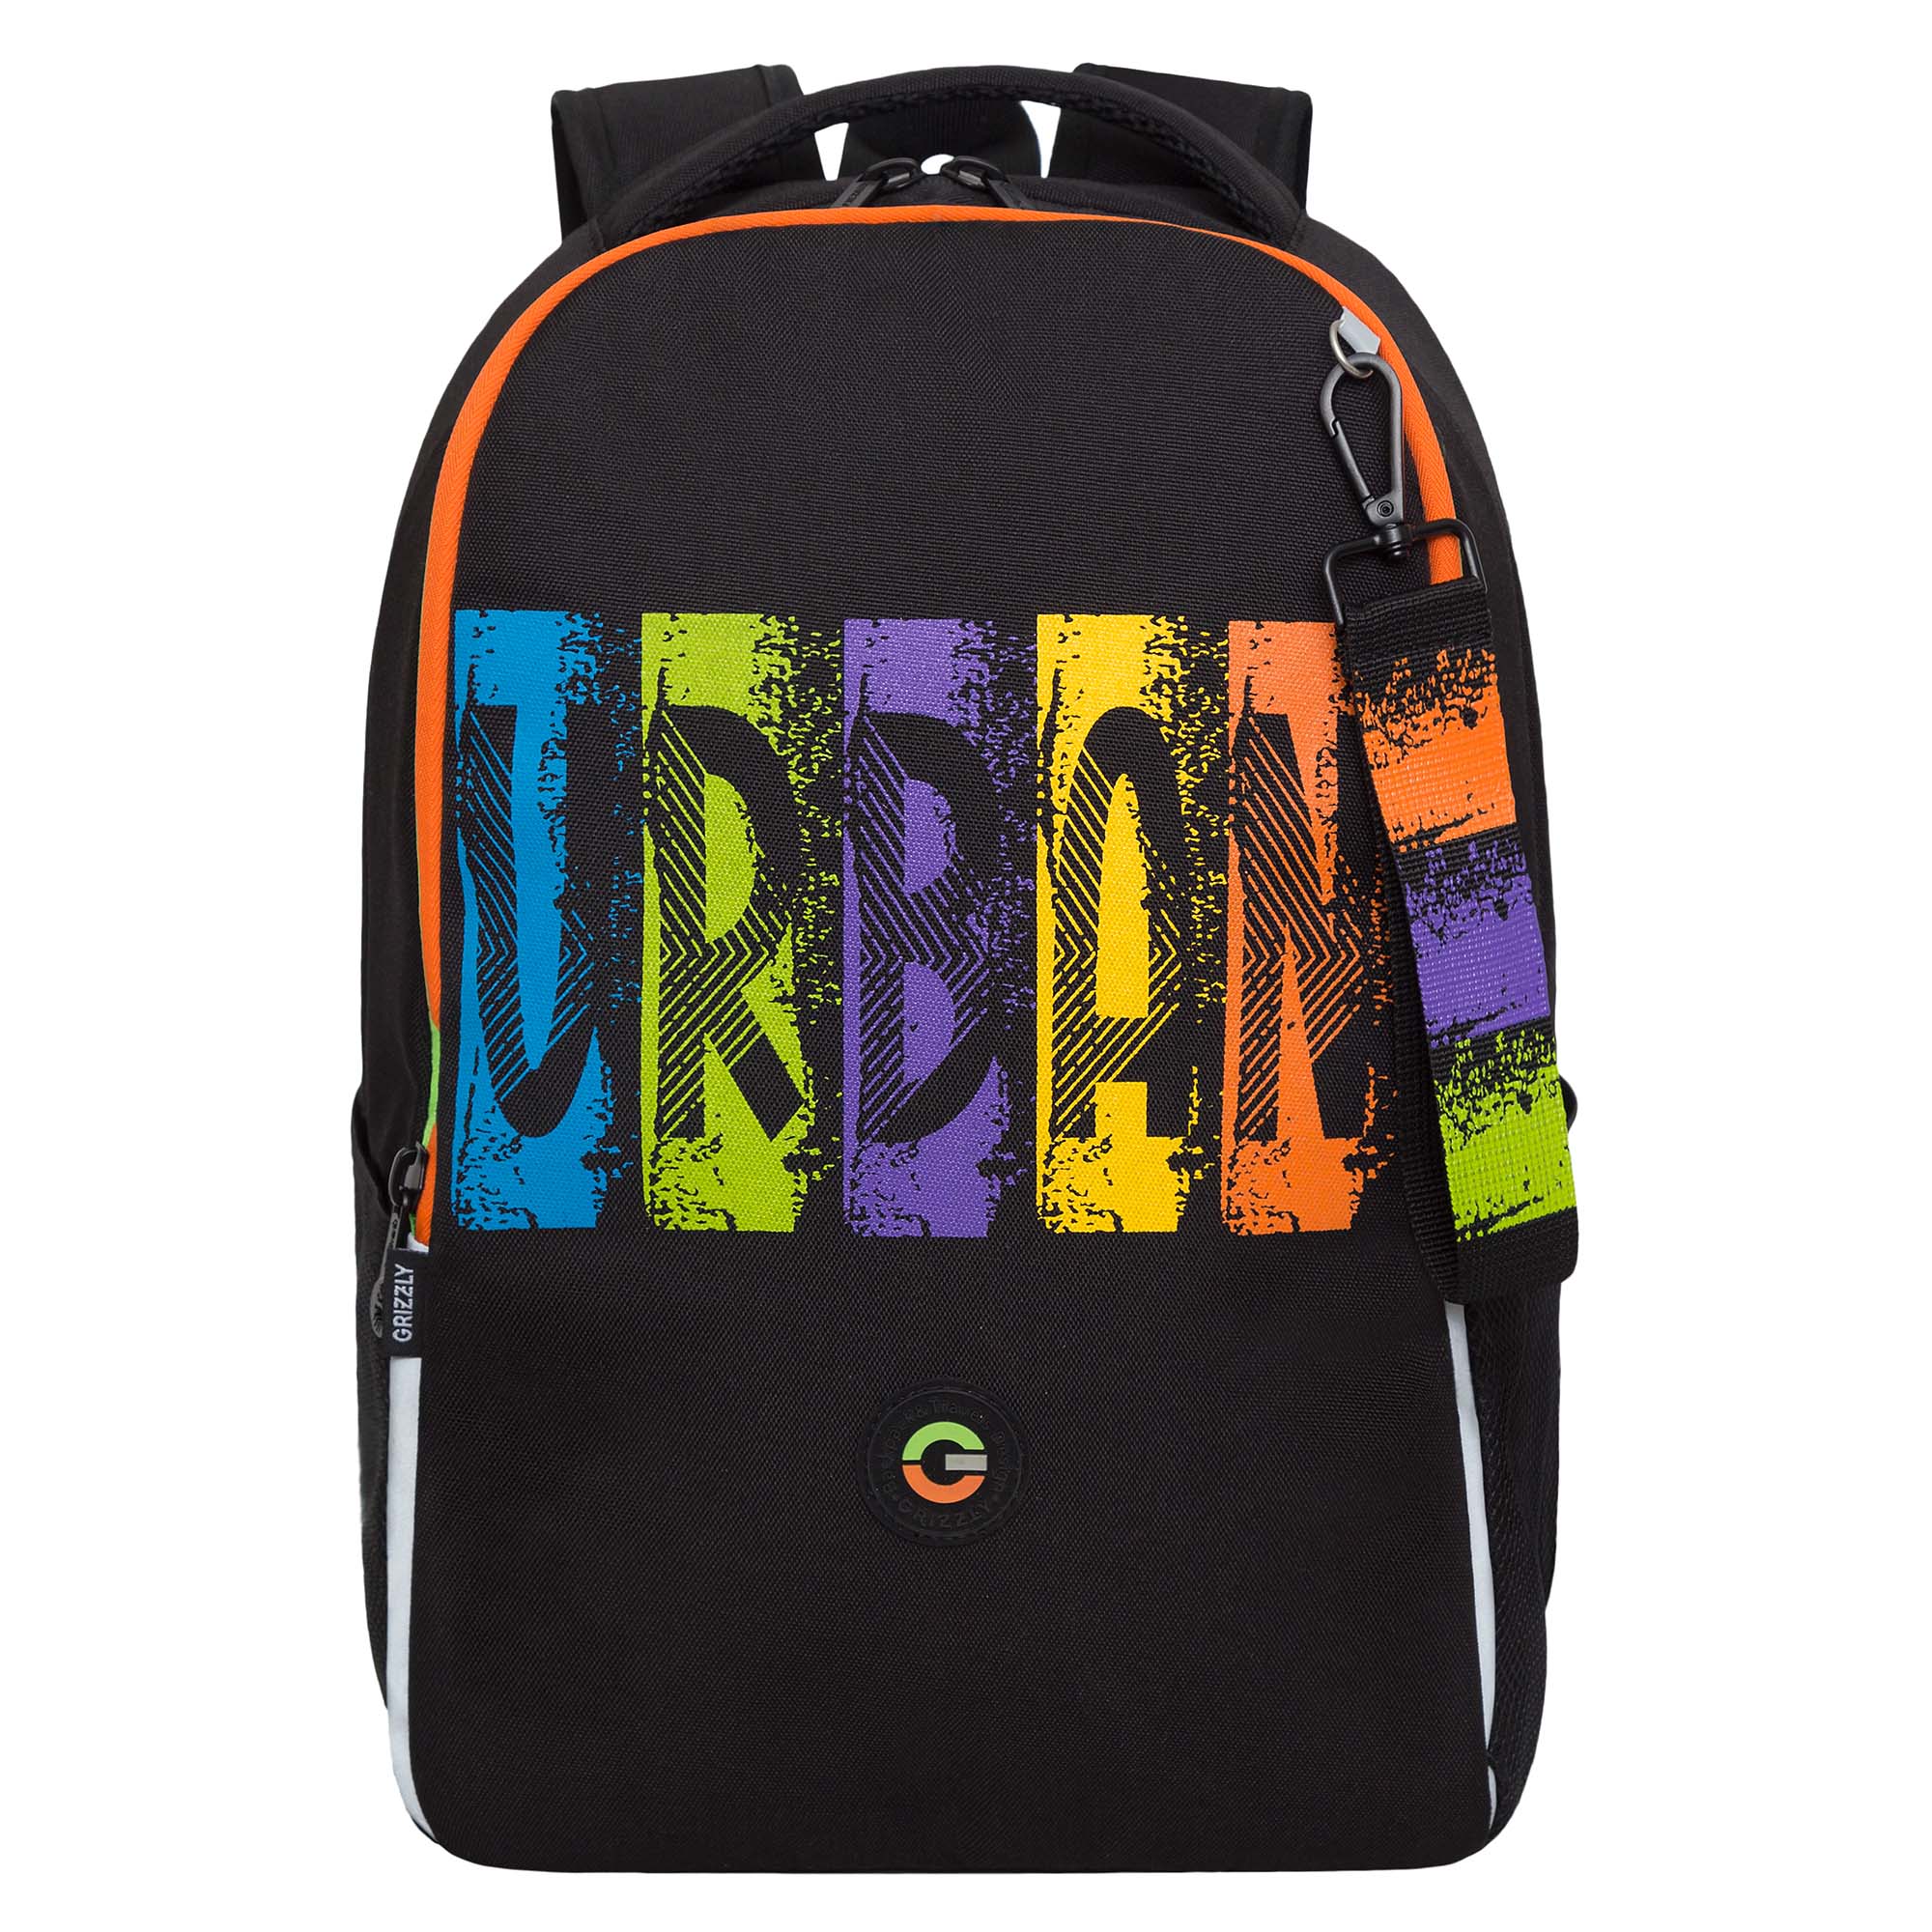 Рюкзак школьный GRIZZLY легкий с жесткой спинкой, 2 отделения, черный, RB-451-3/1 рюкзак школьный сool pack pick 17” lizzard 41х30х16 см 23 л 2 отделения